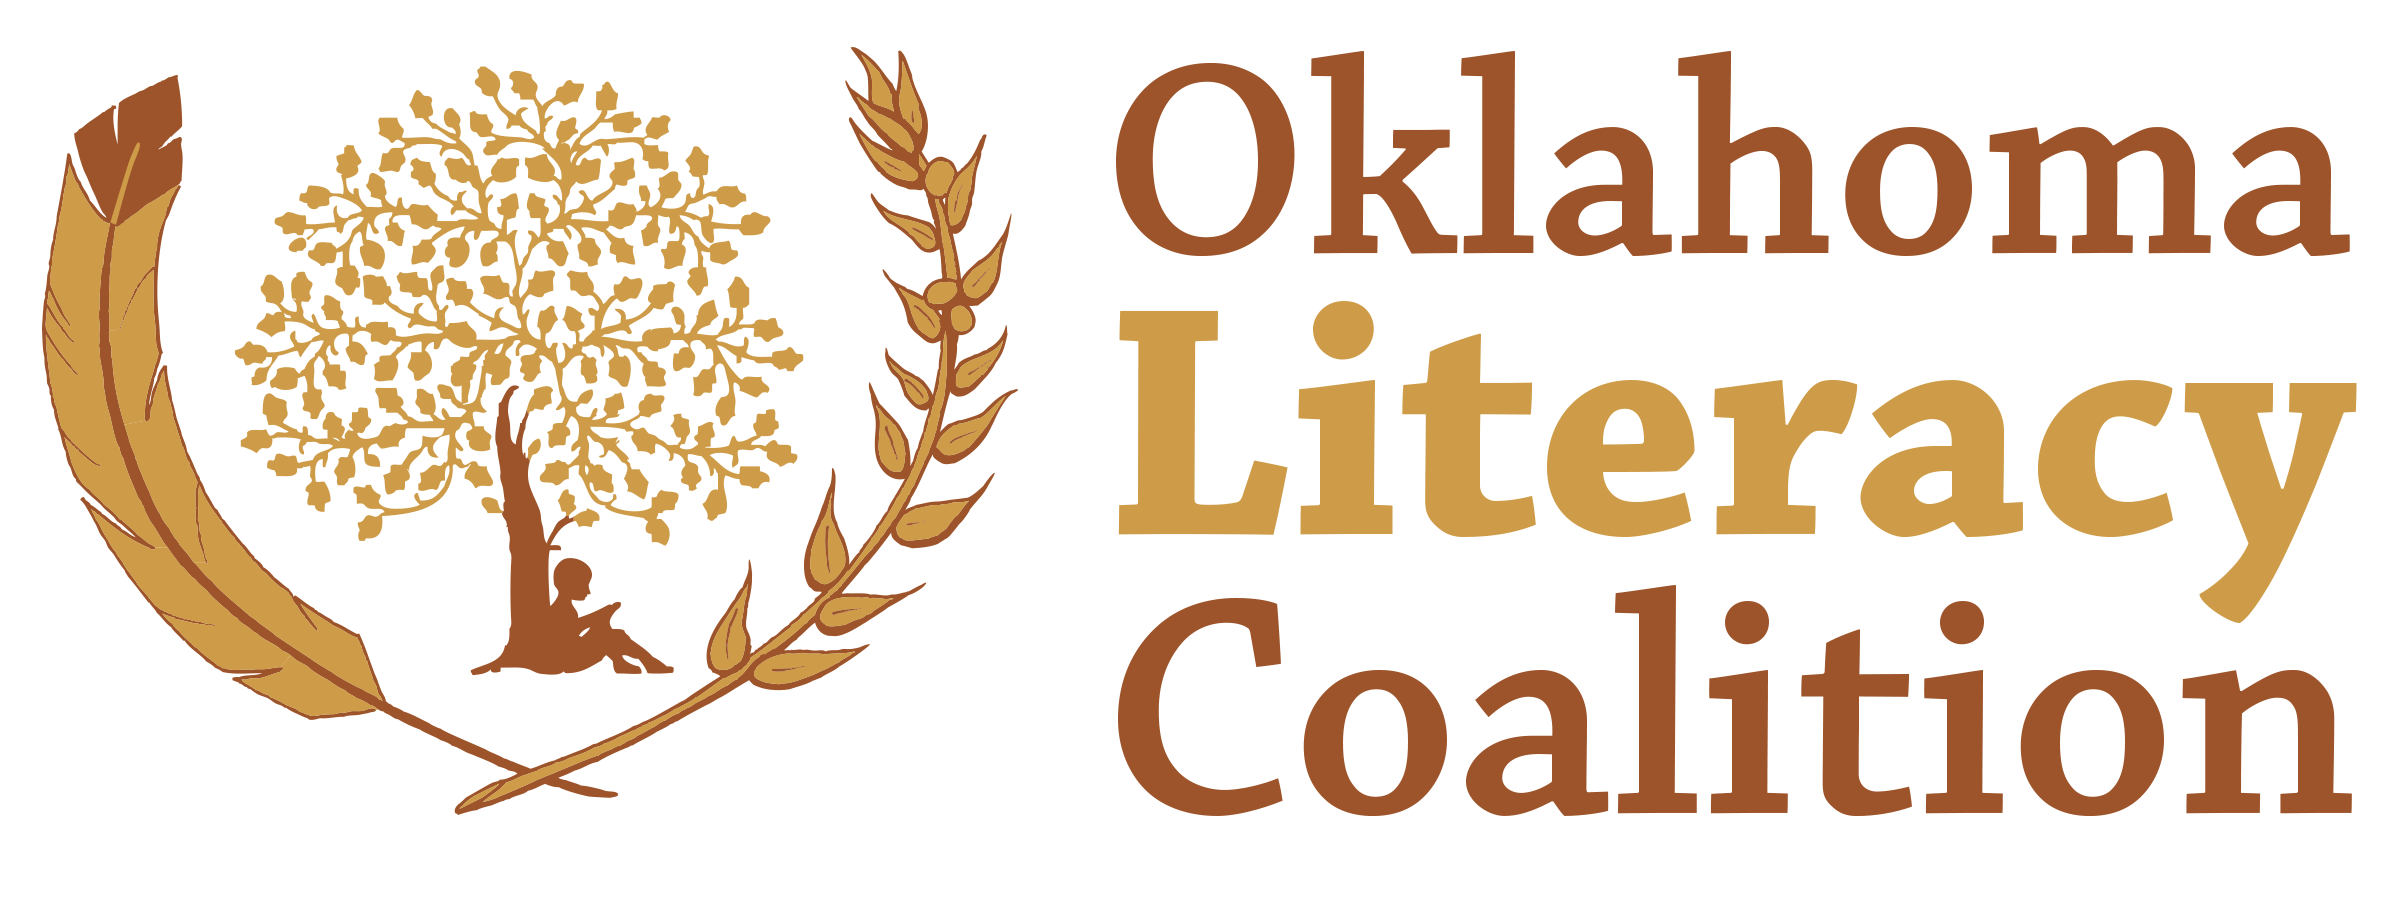 Oklahoma Literacy Coalition, Inc. logo